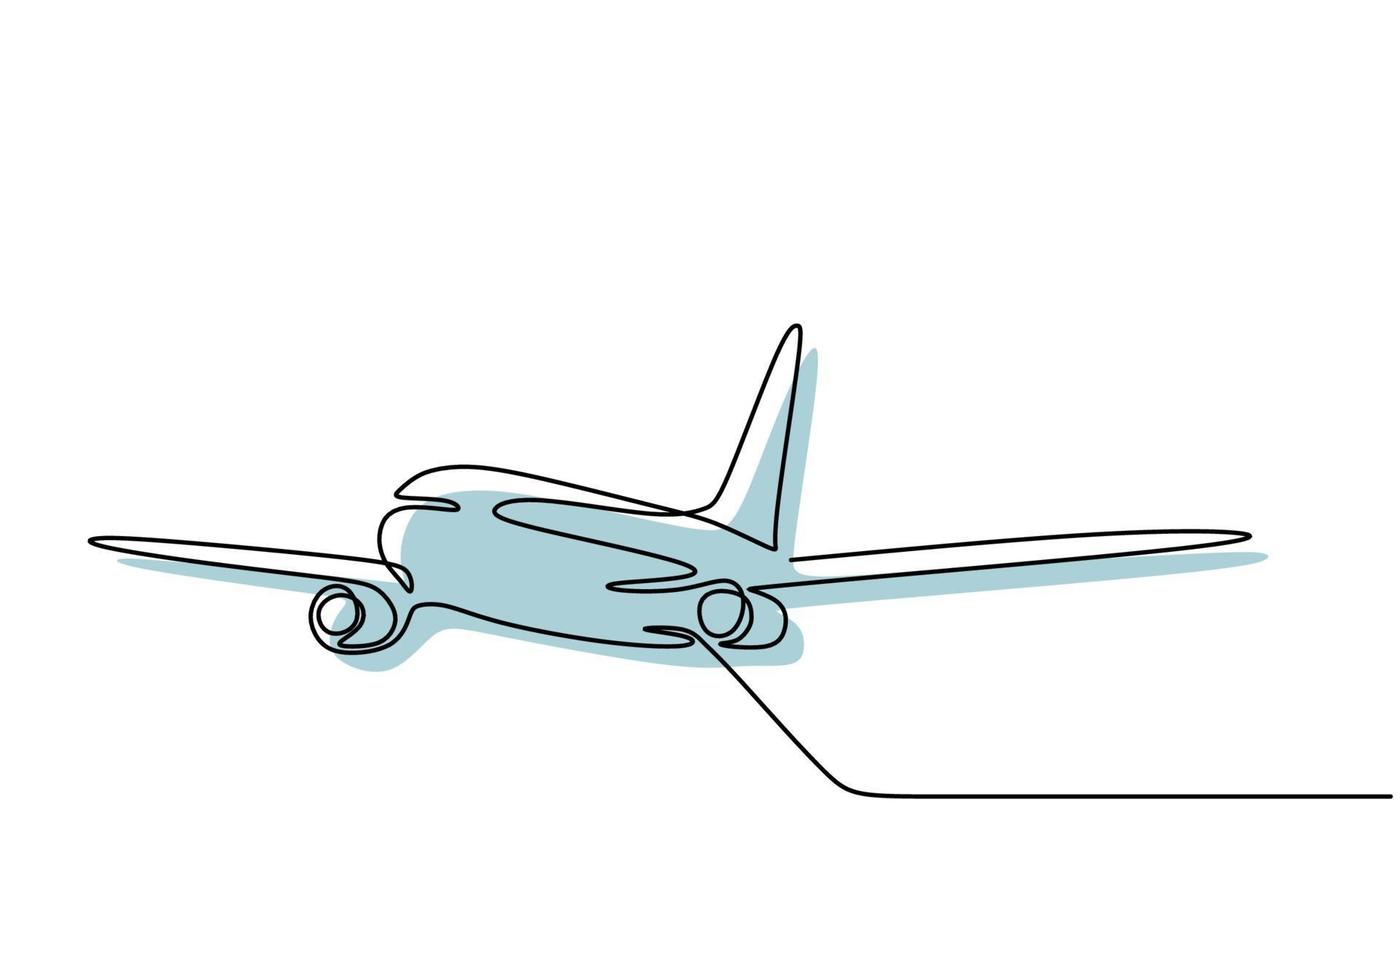 Flugzeug durchgehend eine Linie zeichnen minimales Design. vektor